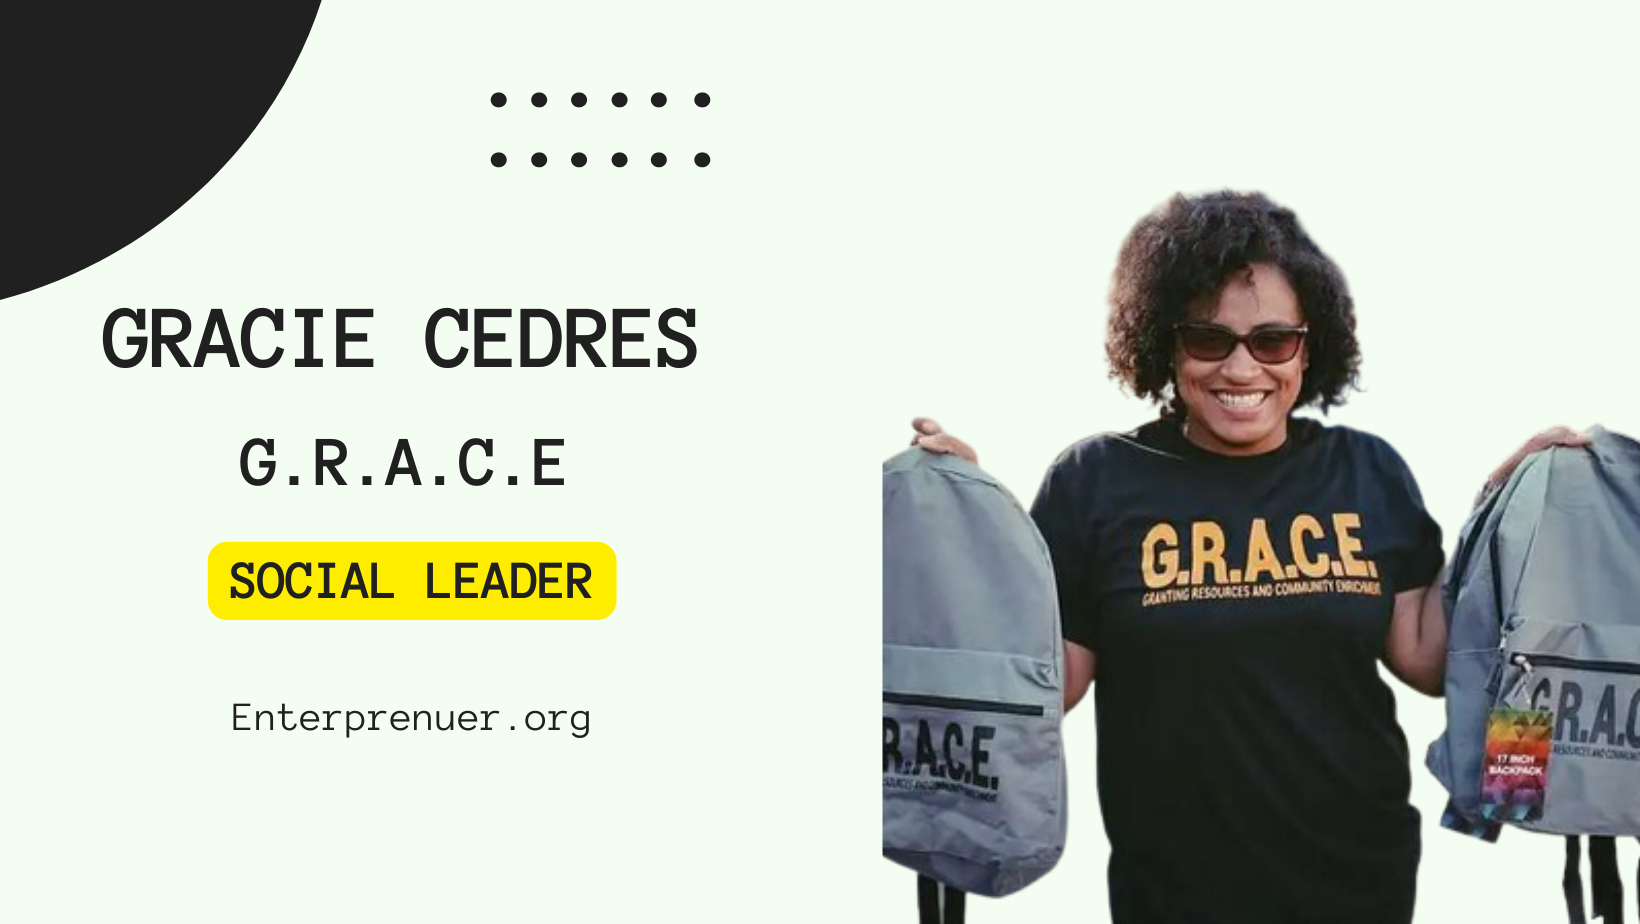 Meet Social Leader Gracie Cedres, Founder of G.R.A.C.E.